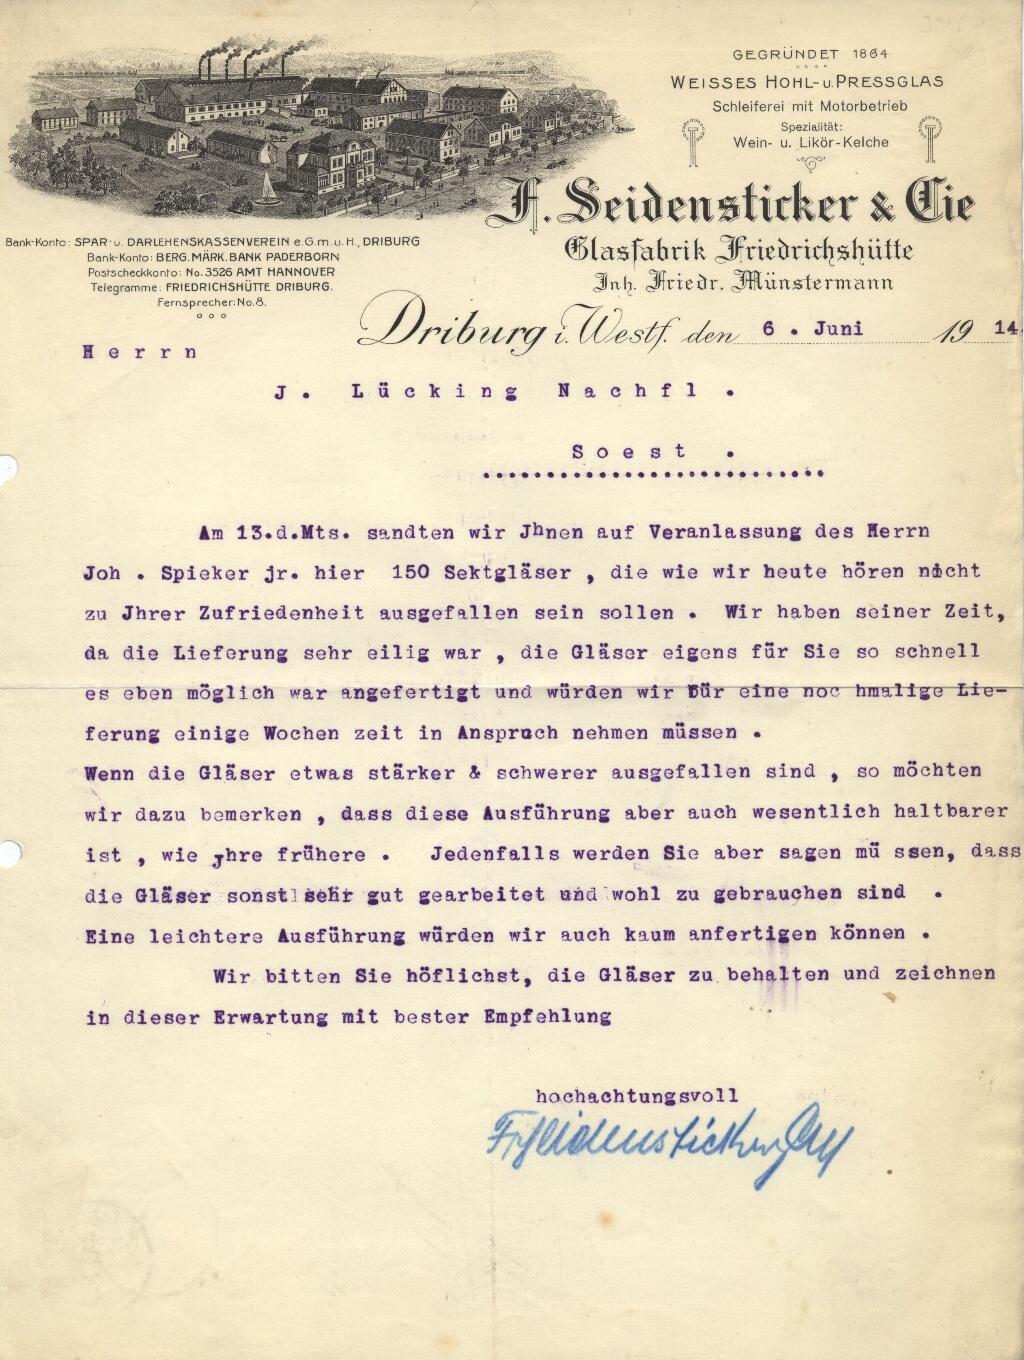 "Seidensticker 1914"